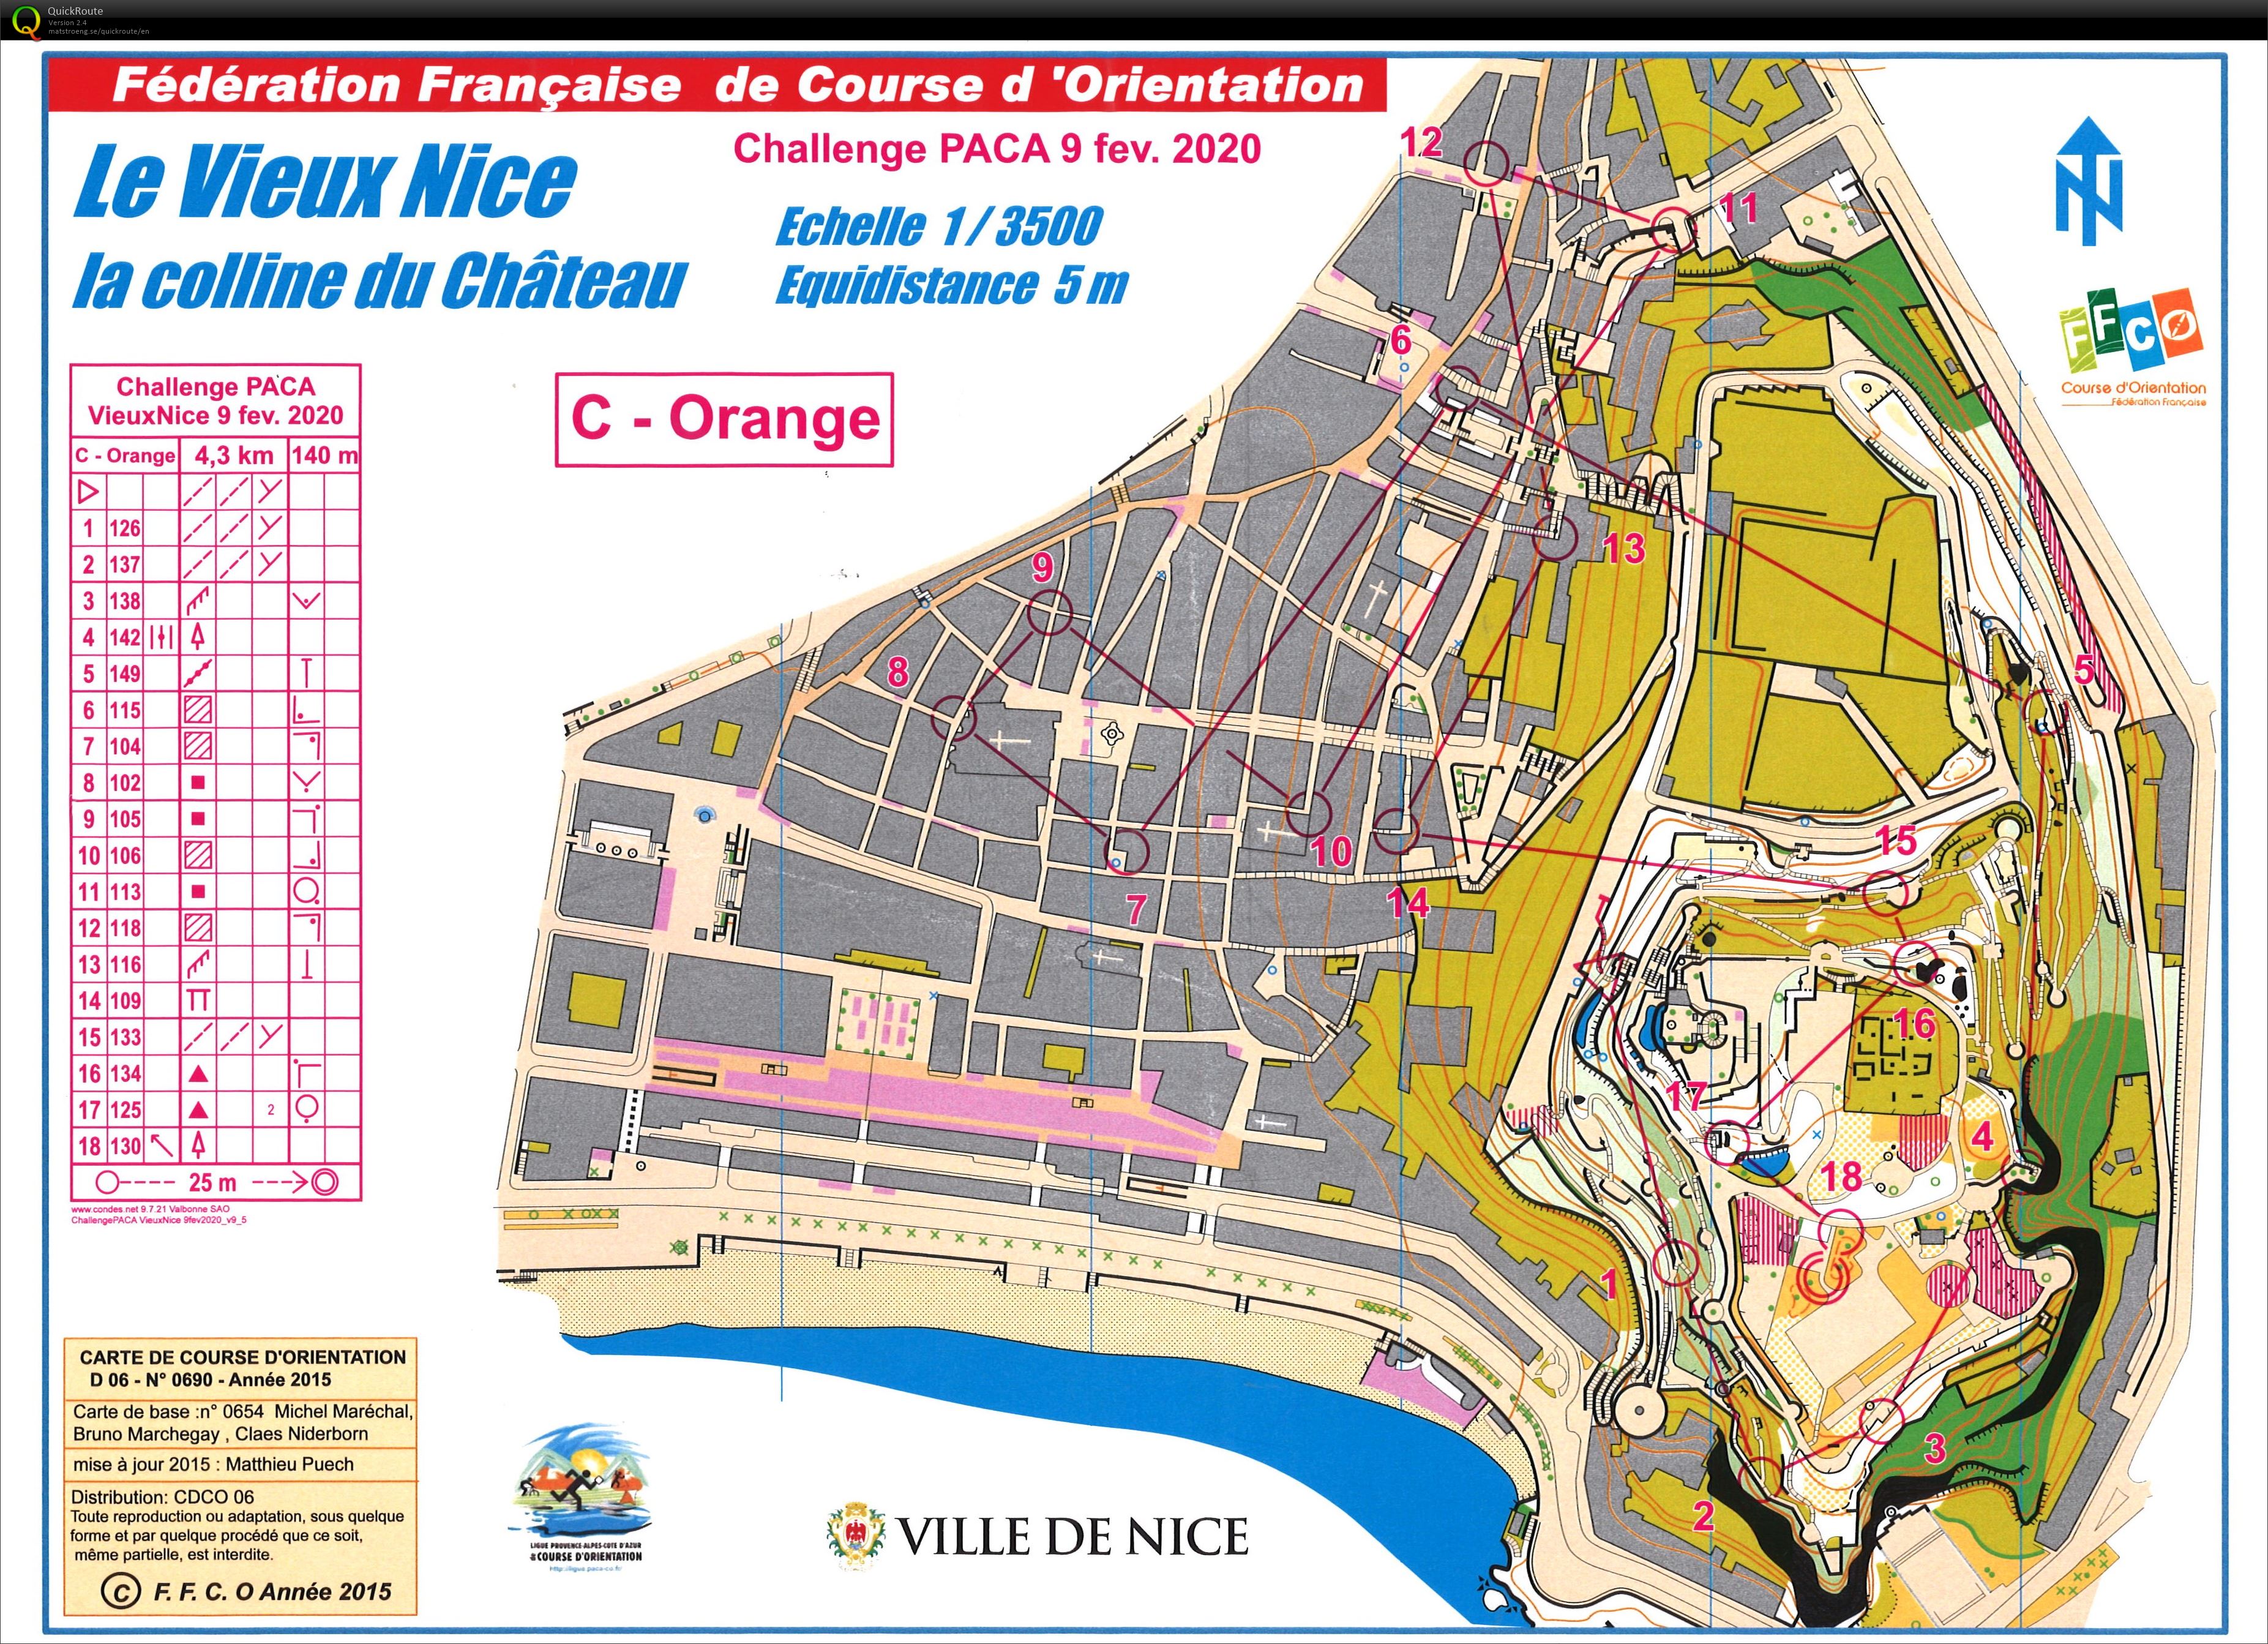 Régionale CN Vieux Nice (09.02.2020)